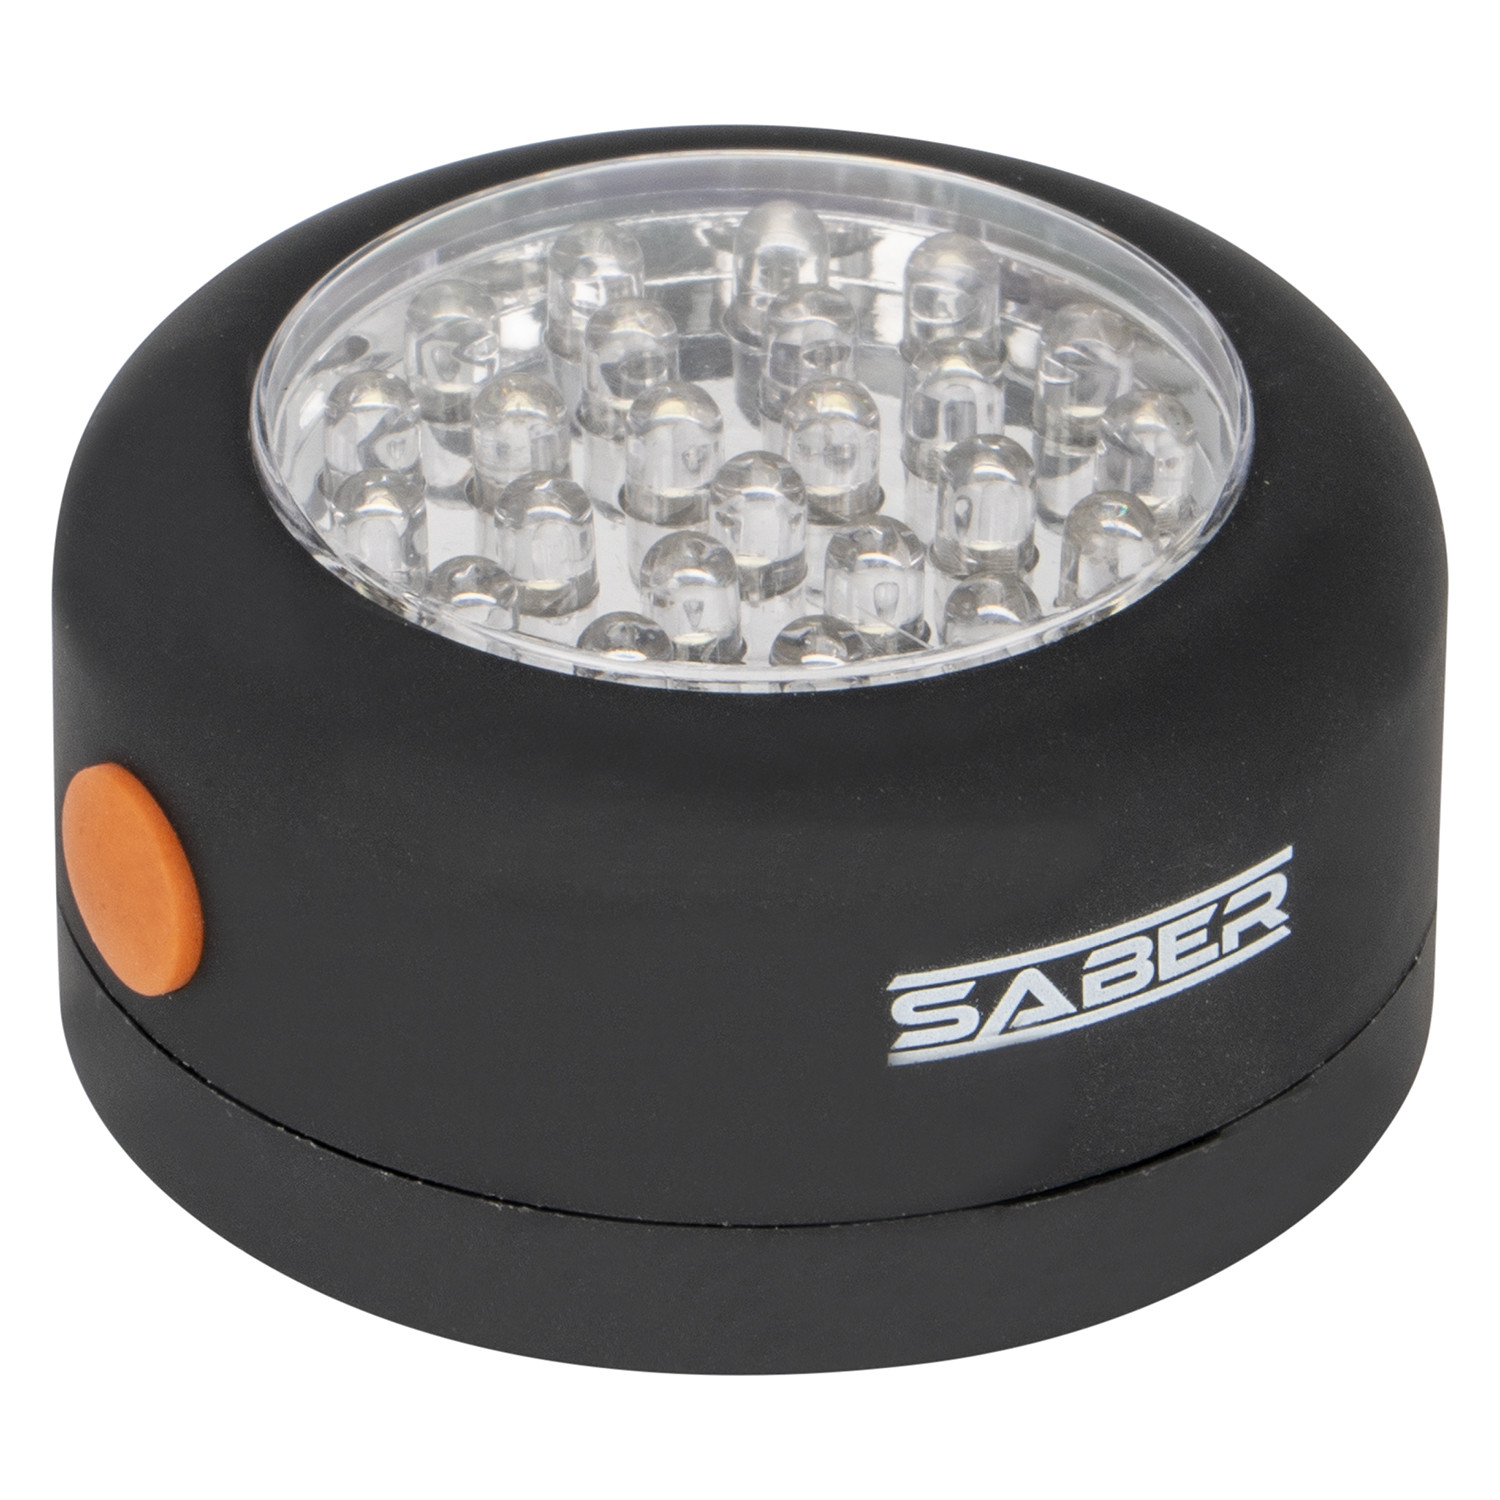 Saber 24 LED Work Light Image 1